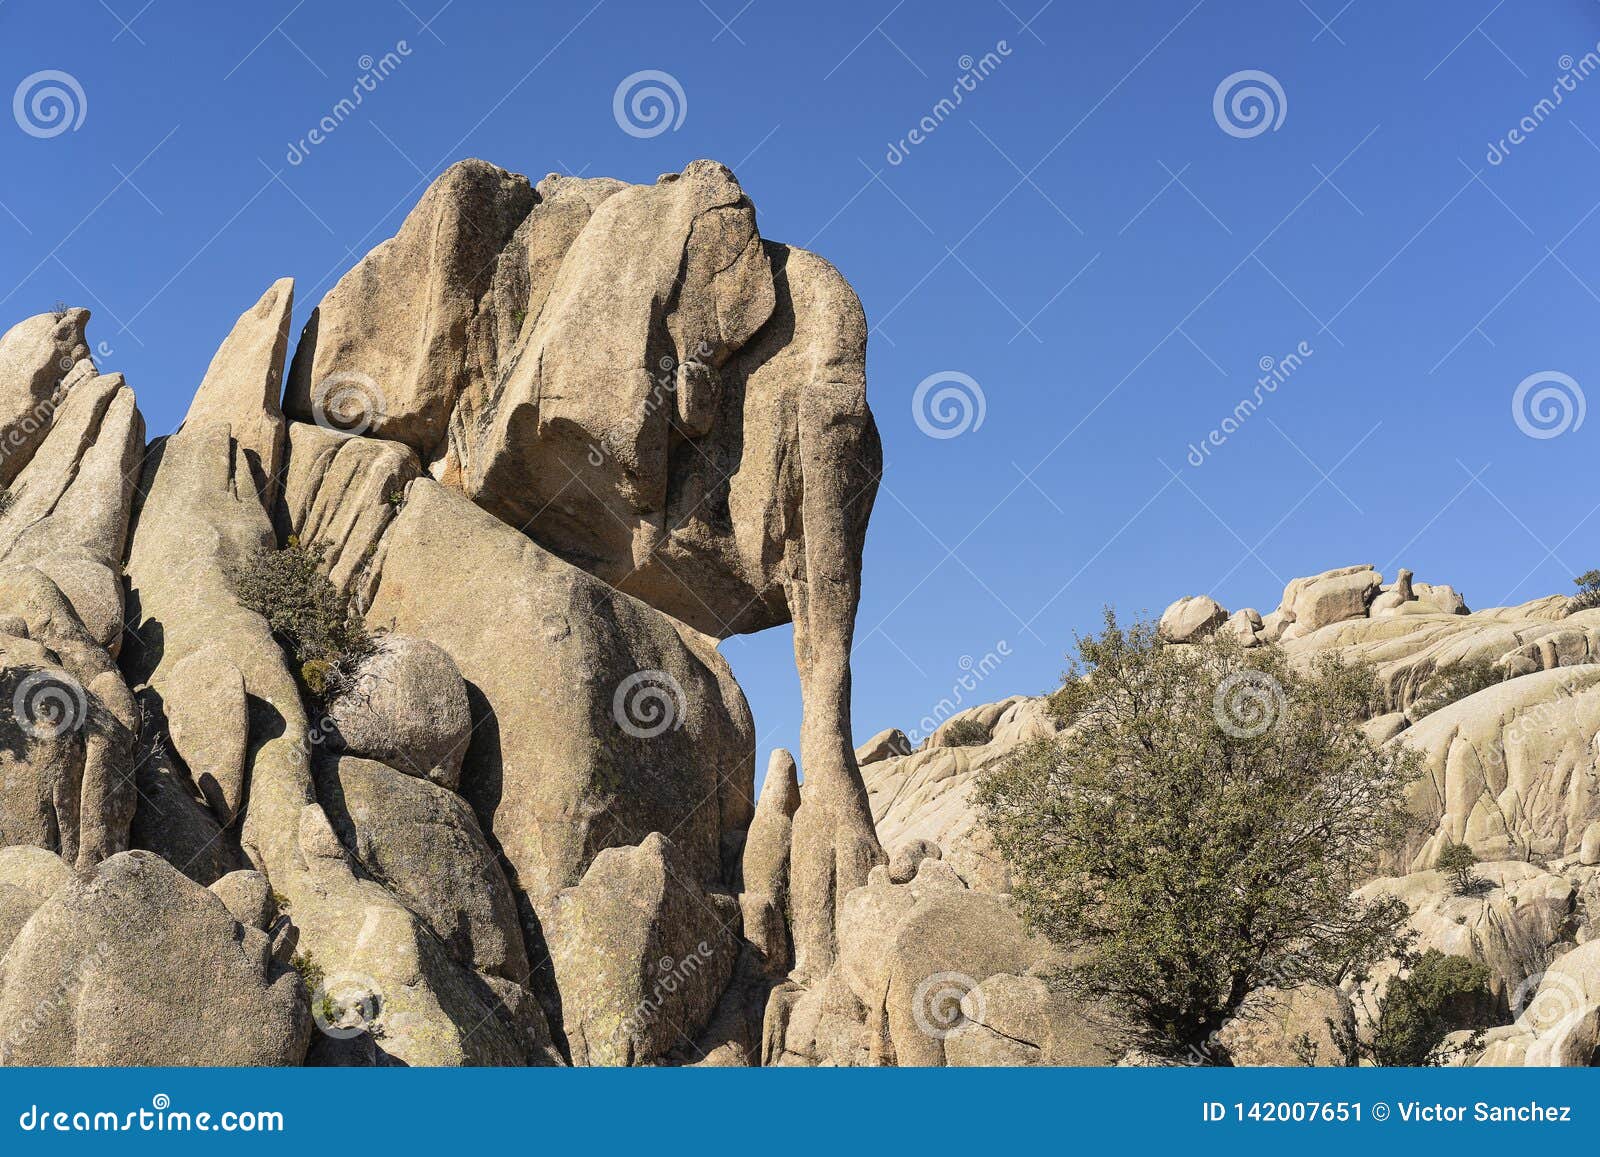 The Granite Rock of the Elefantito in La Pedriza, National Park of ...